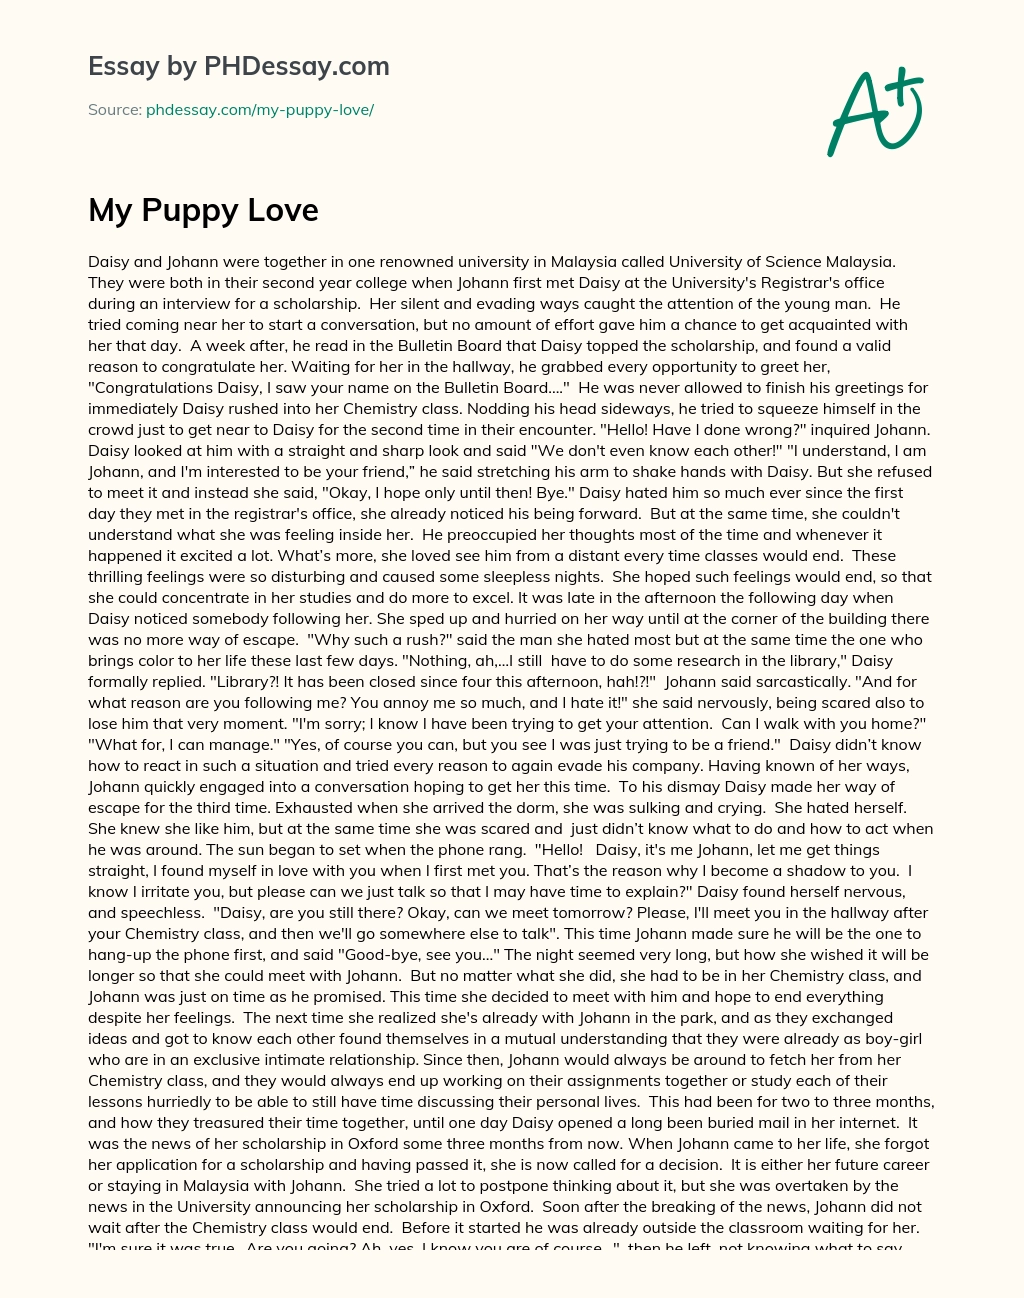 My Puppy Love essay